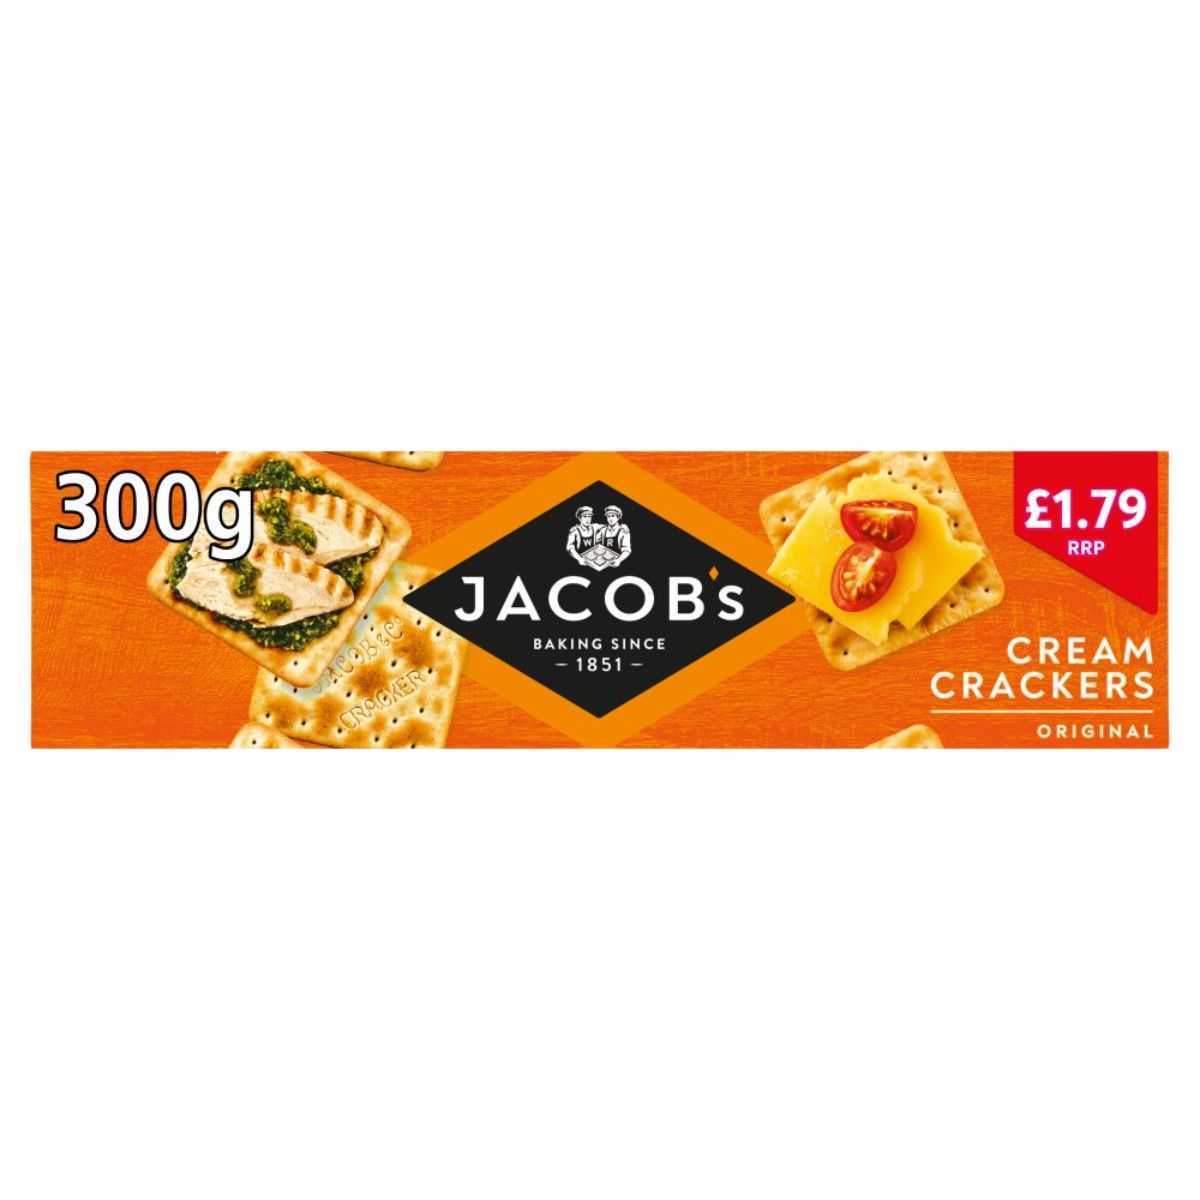 Jacob's - Cream Crackers - 300g.